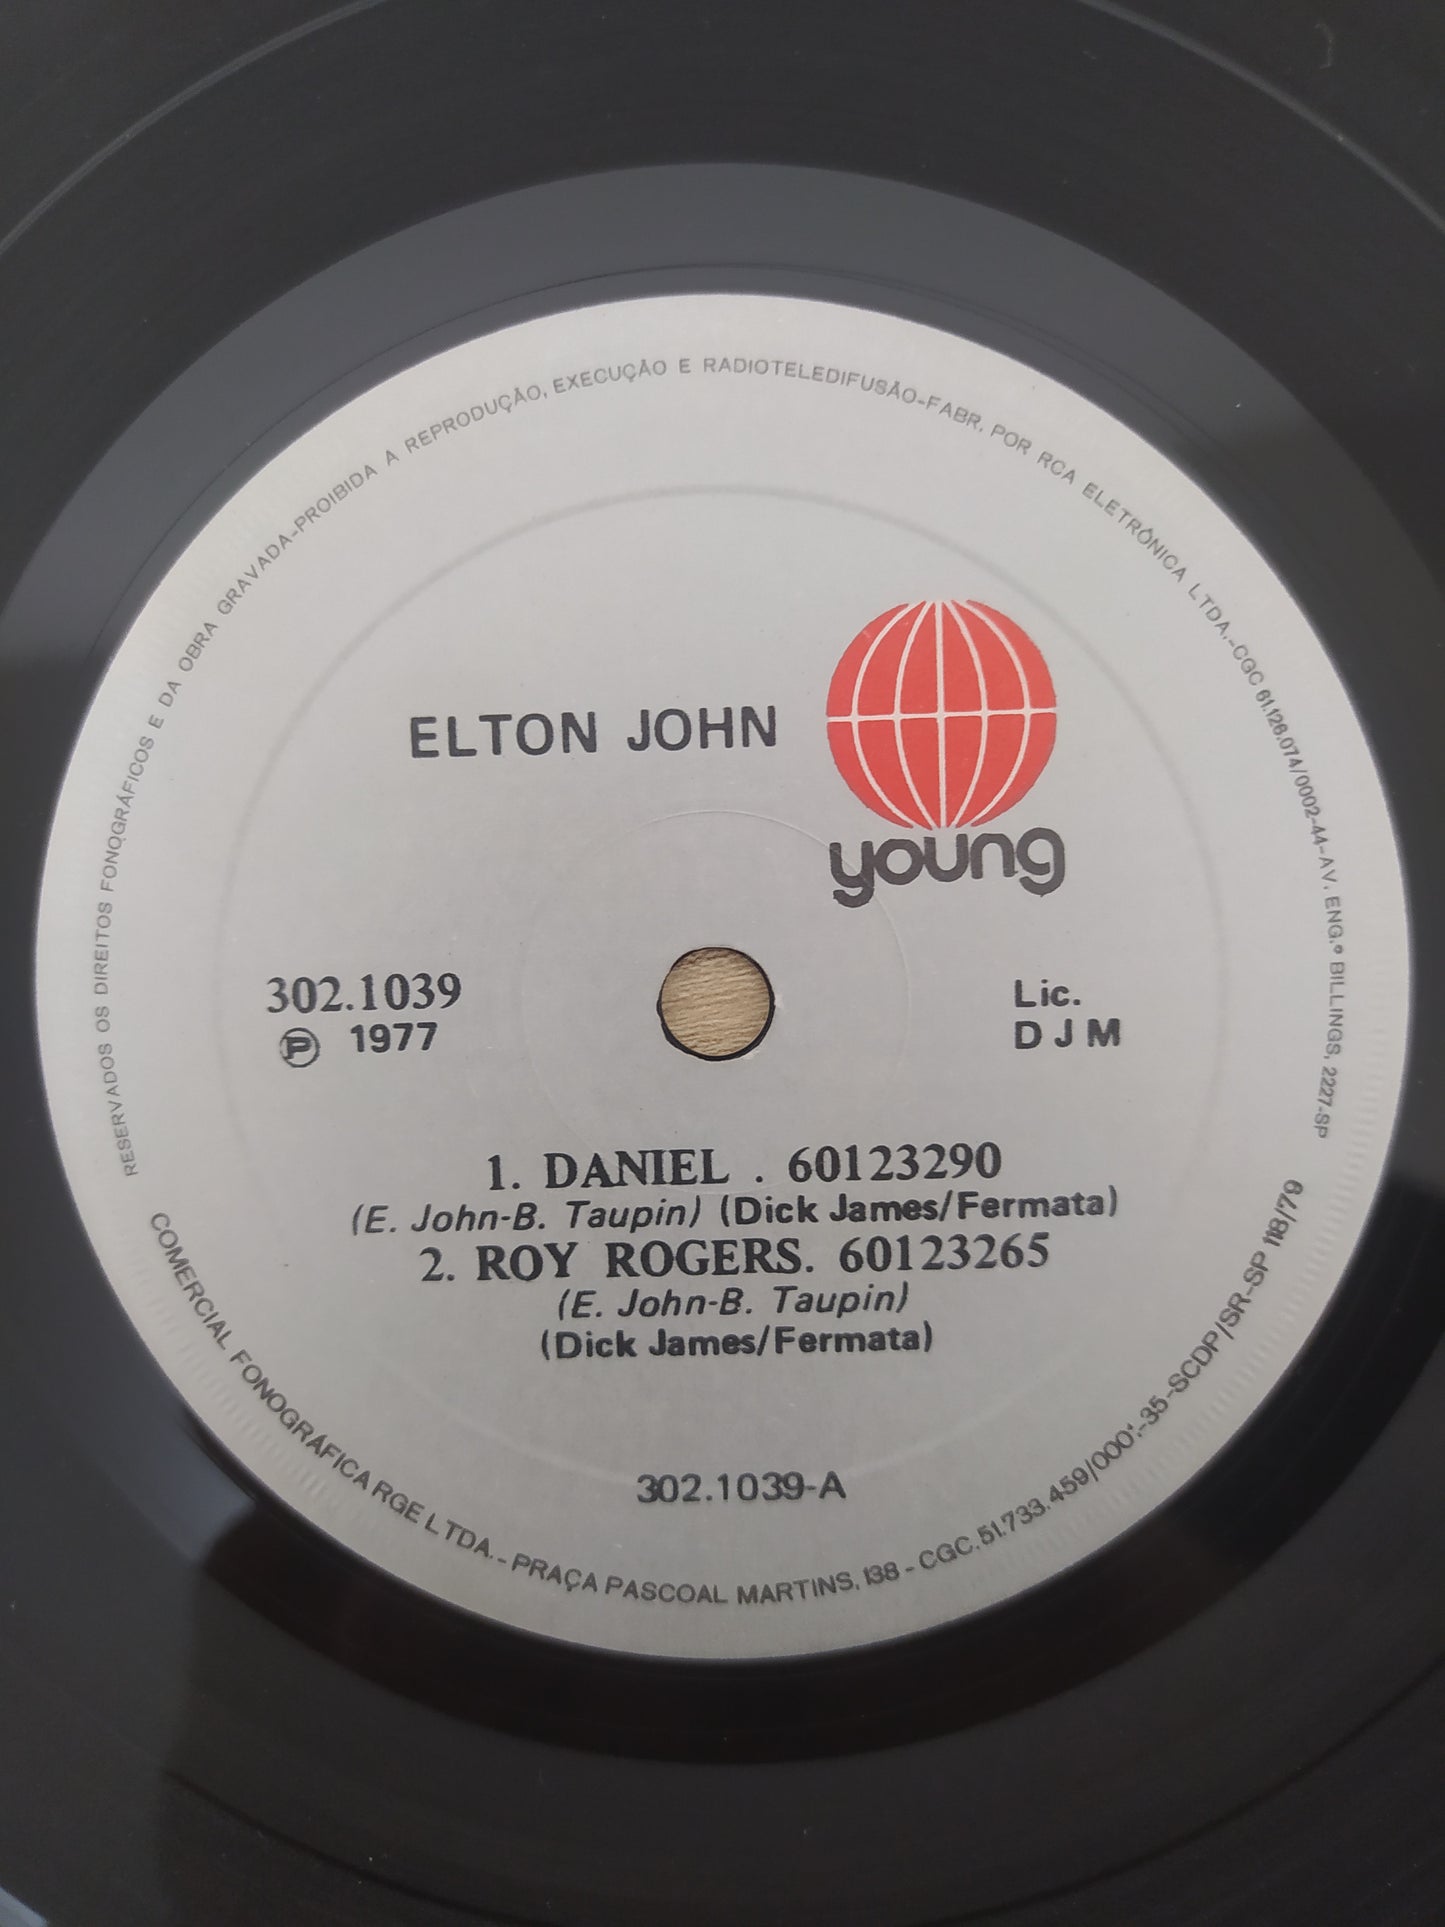 Vinil Compacto Elton John Four From Four Eyes